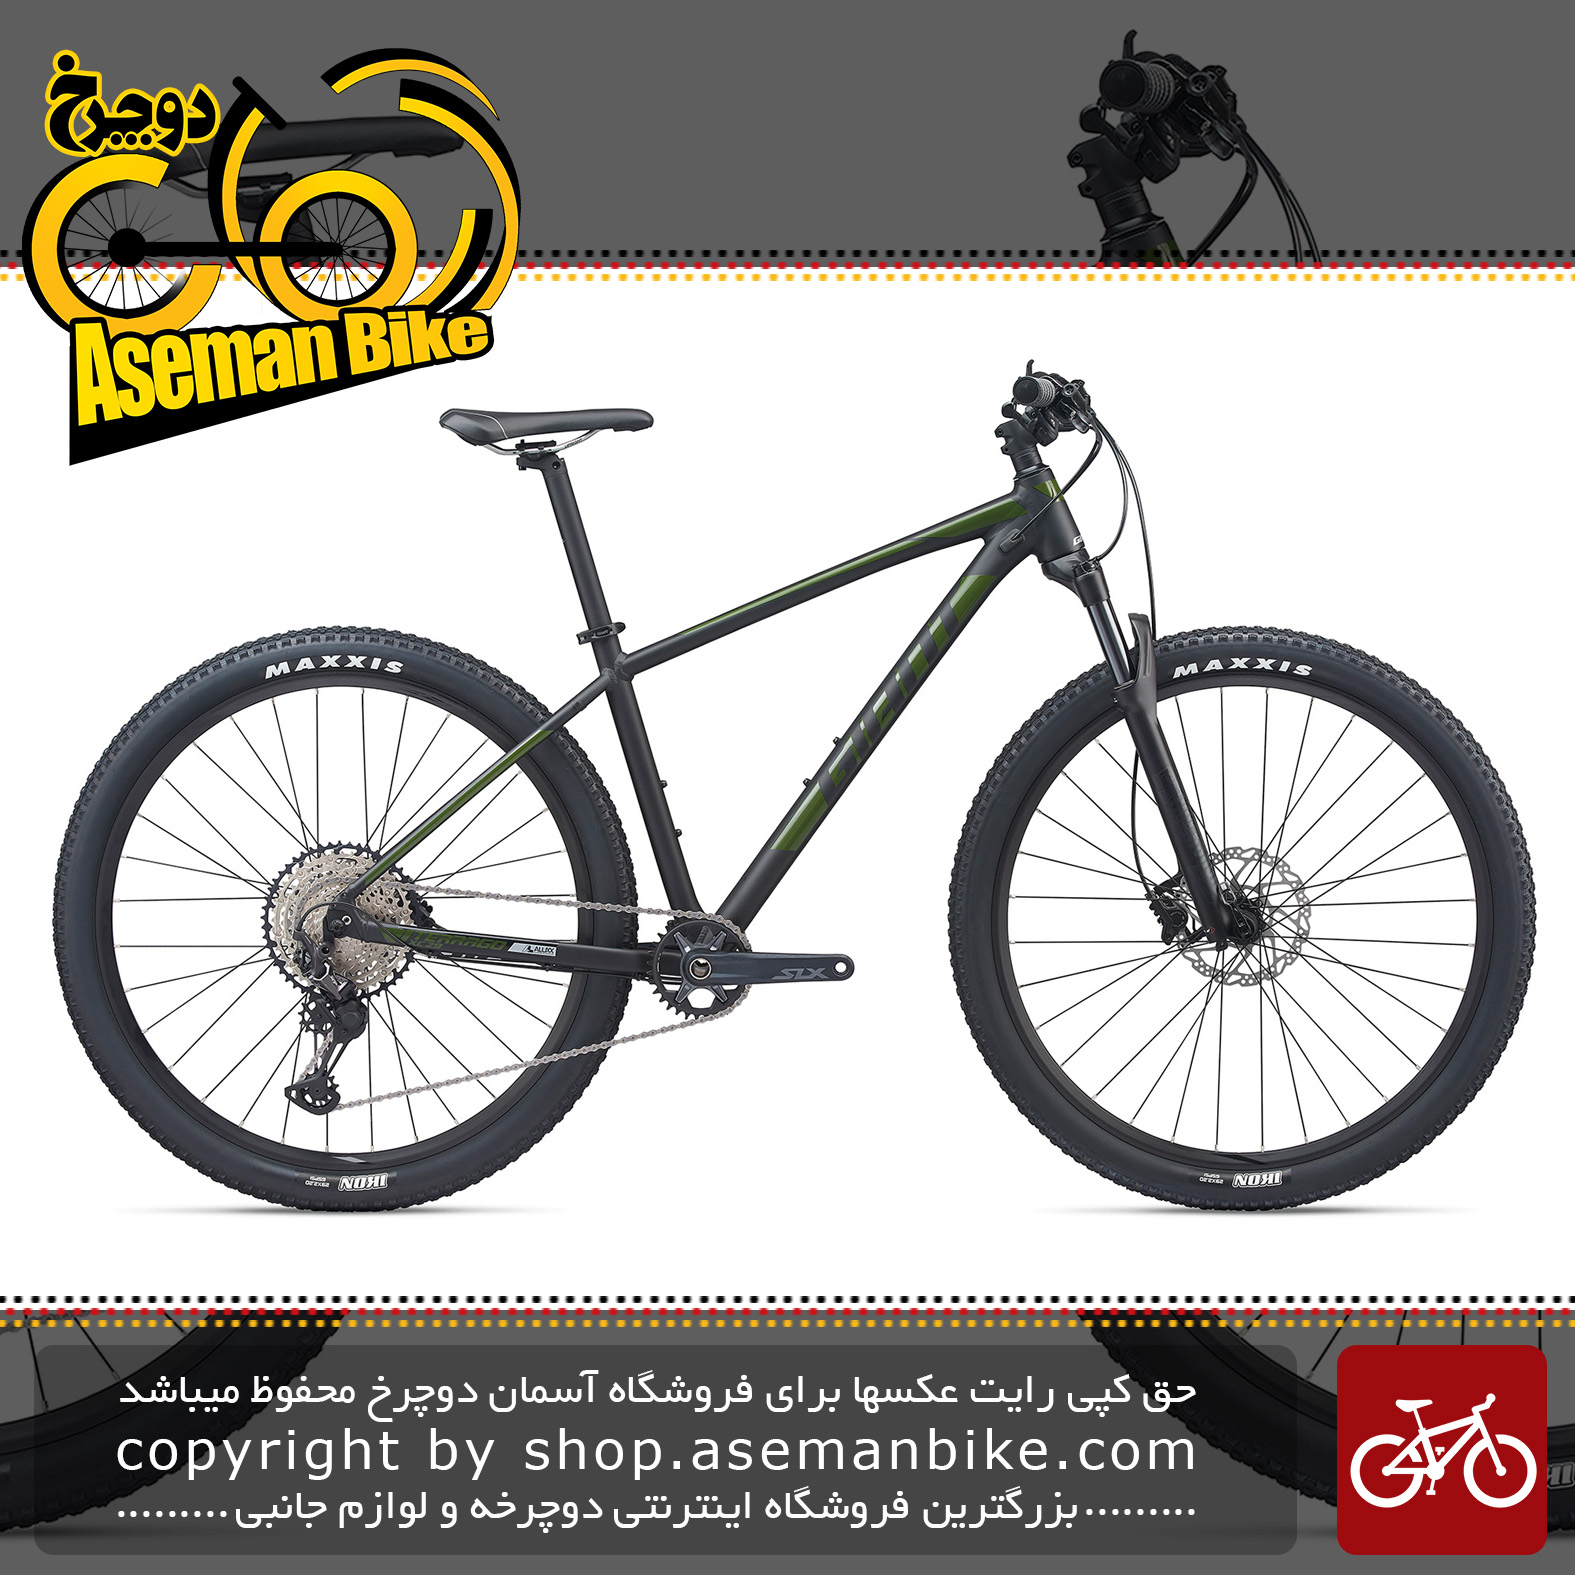 دوچرخه کوهستان جاینت مدل تراگو 29 اینچ 1 2020 Giant Mountain Bicycle Terrago 29 1 2020